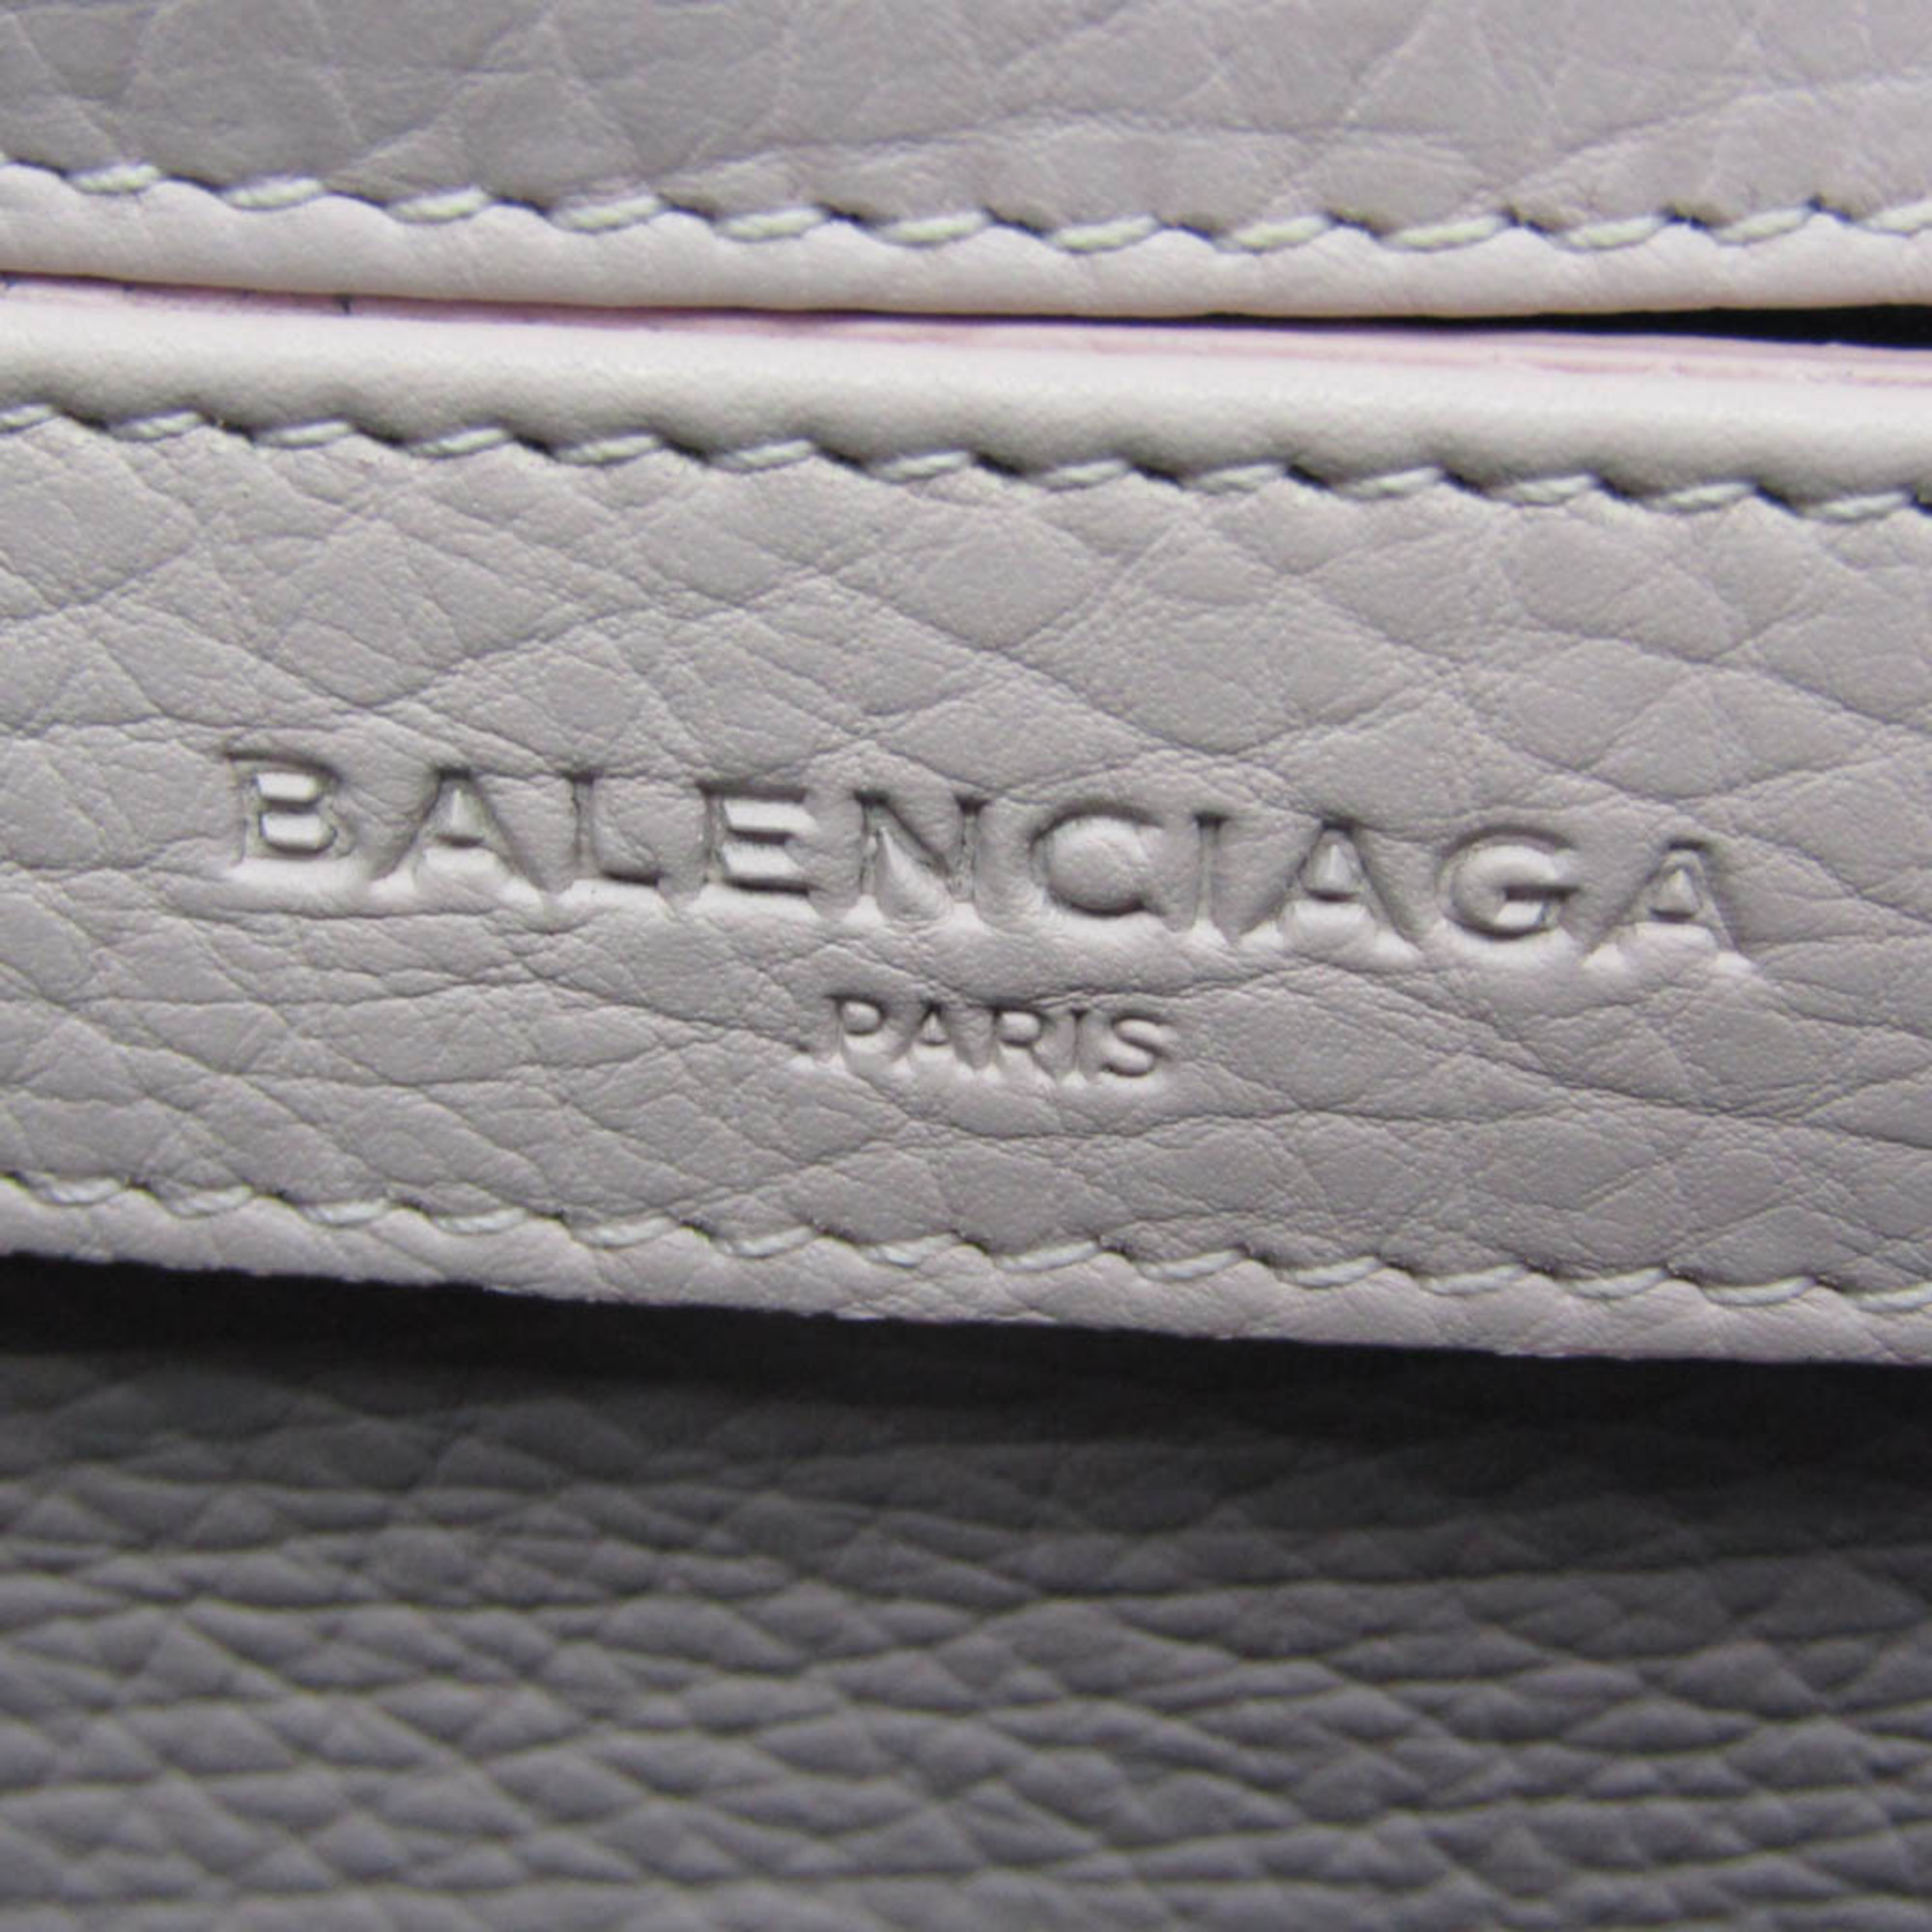 バレンシアガ(Balenciaga) チューブ S 338577 レディース レザー ショルダーバッグ ピンク